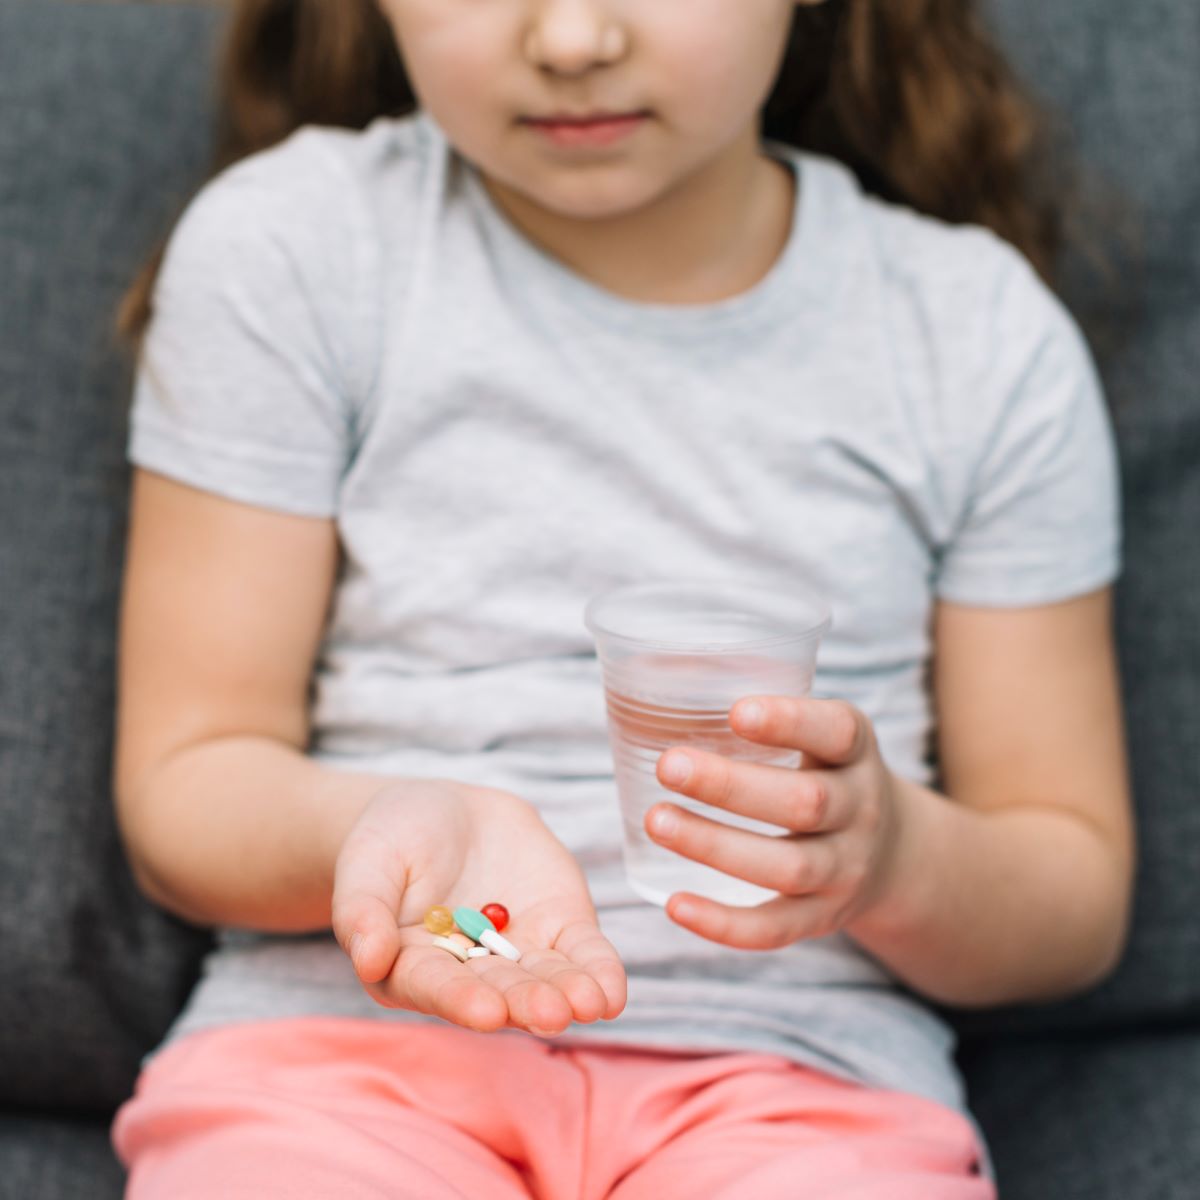 Donnons-nous trop d'antibiotiques aux enfants ? La santé publique nous alerte sur le sujet